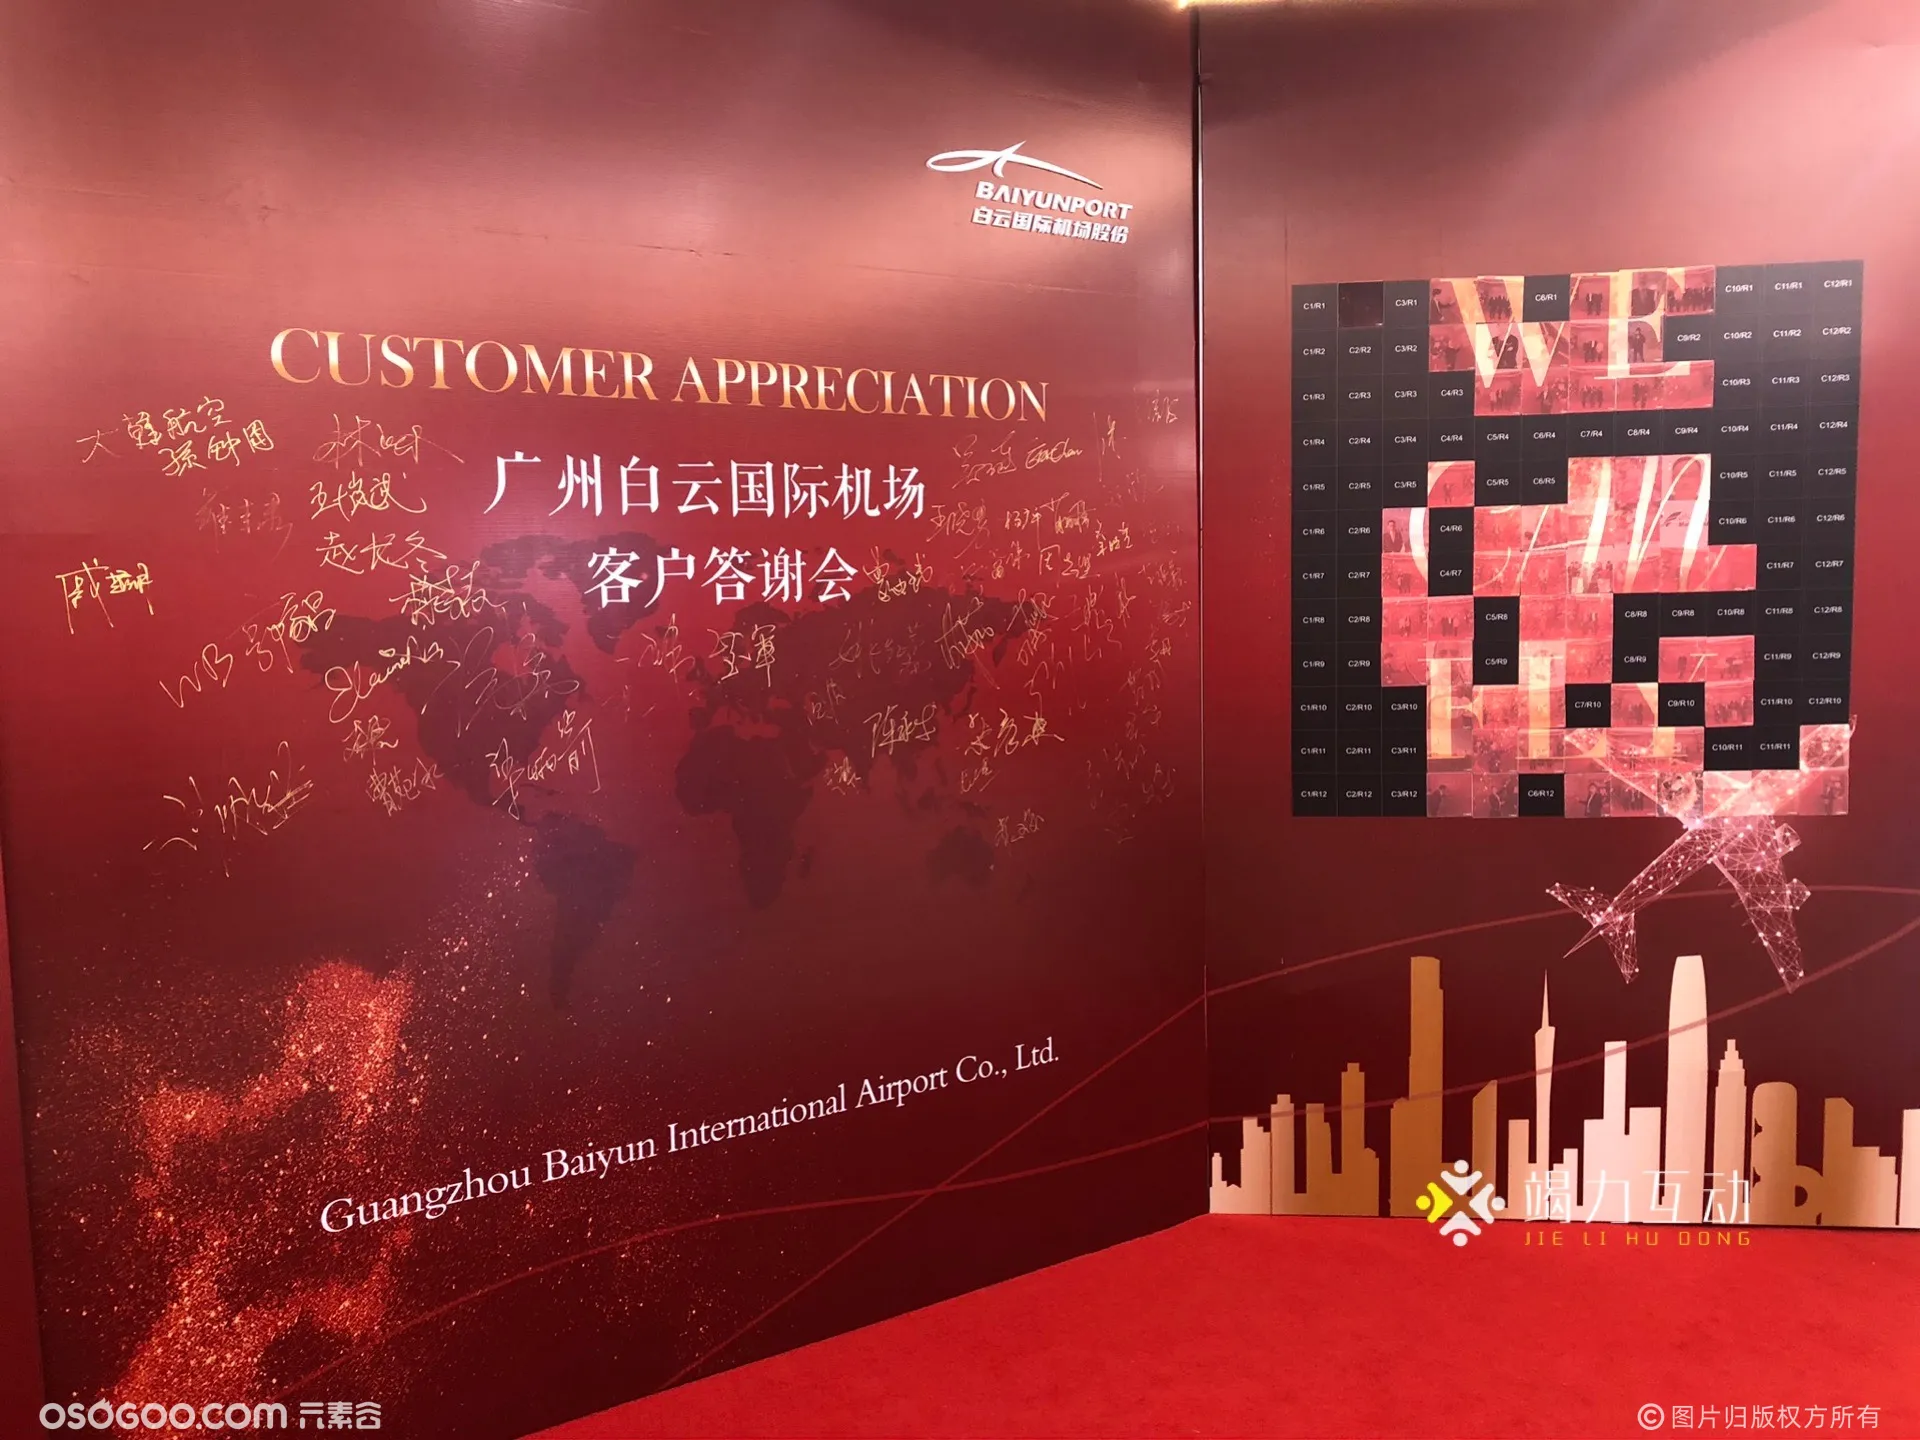 广州白云国际机场客户答谢会/马赛克拼图签到互动墙案例